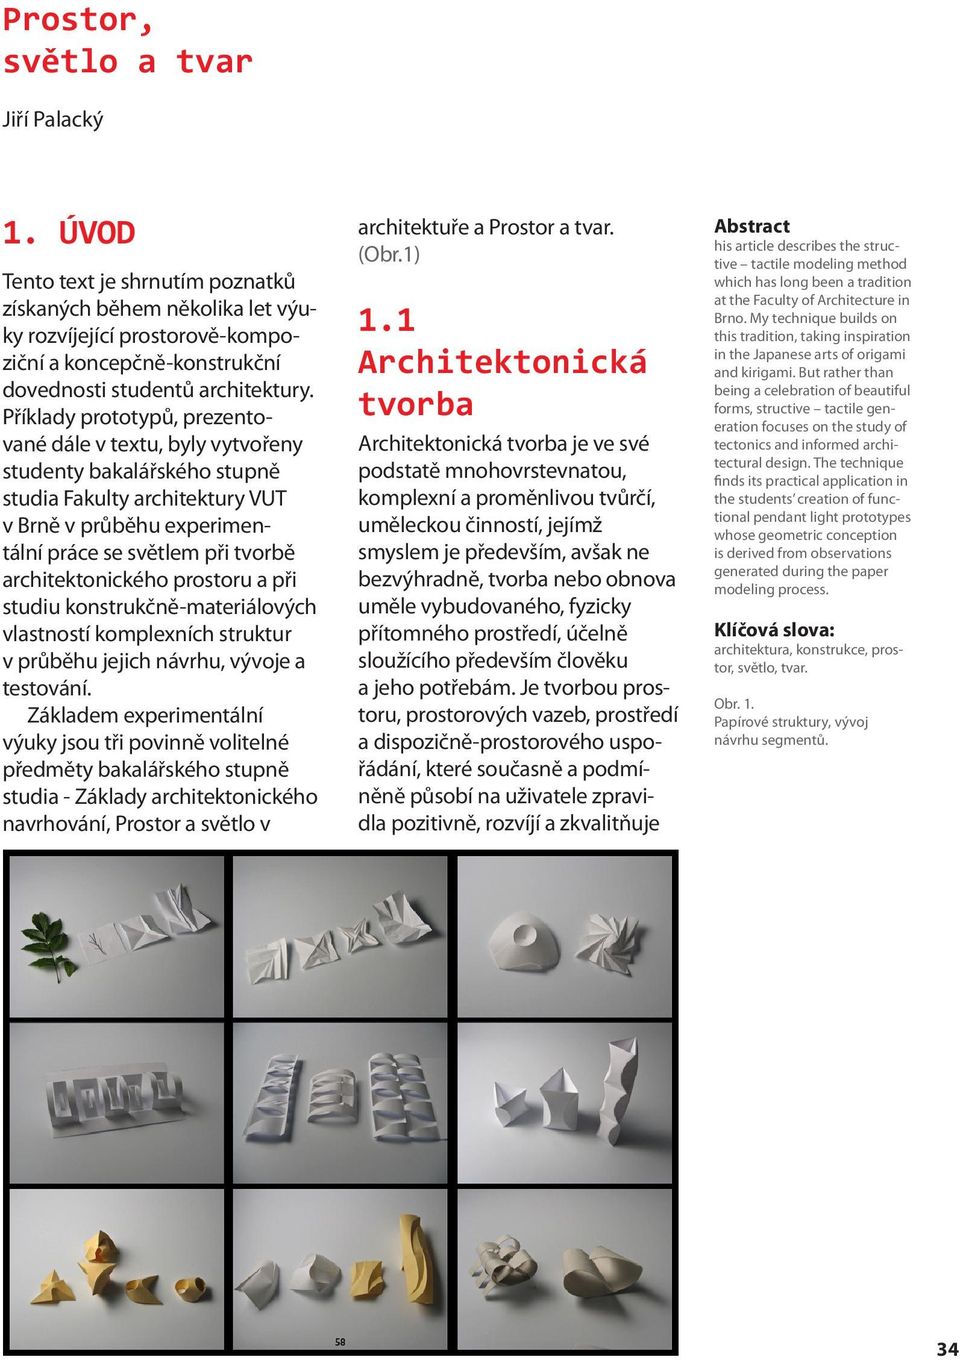 architektonického prostoru a při studiu konstrukčně-materiálových vlastností komplexních struktur v průběhu jejich návrhu, vývoje a testování.